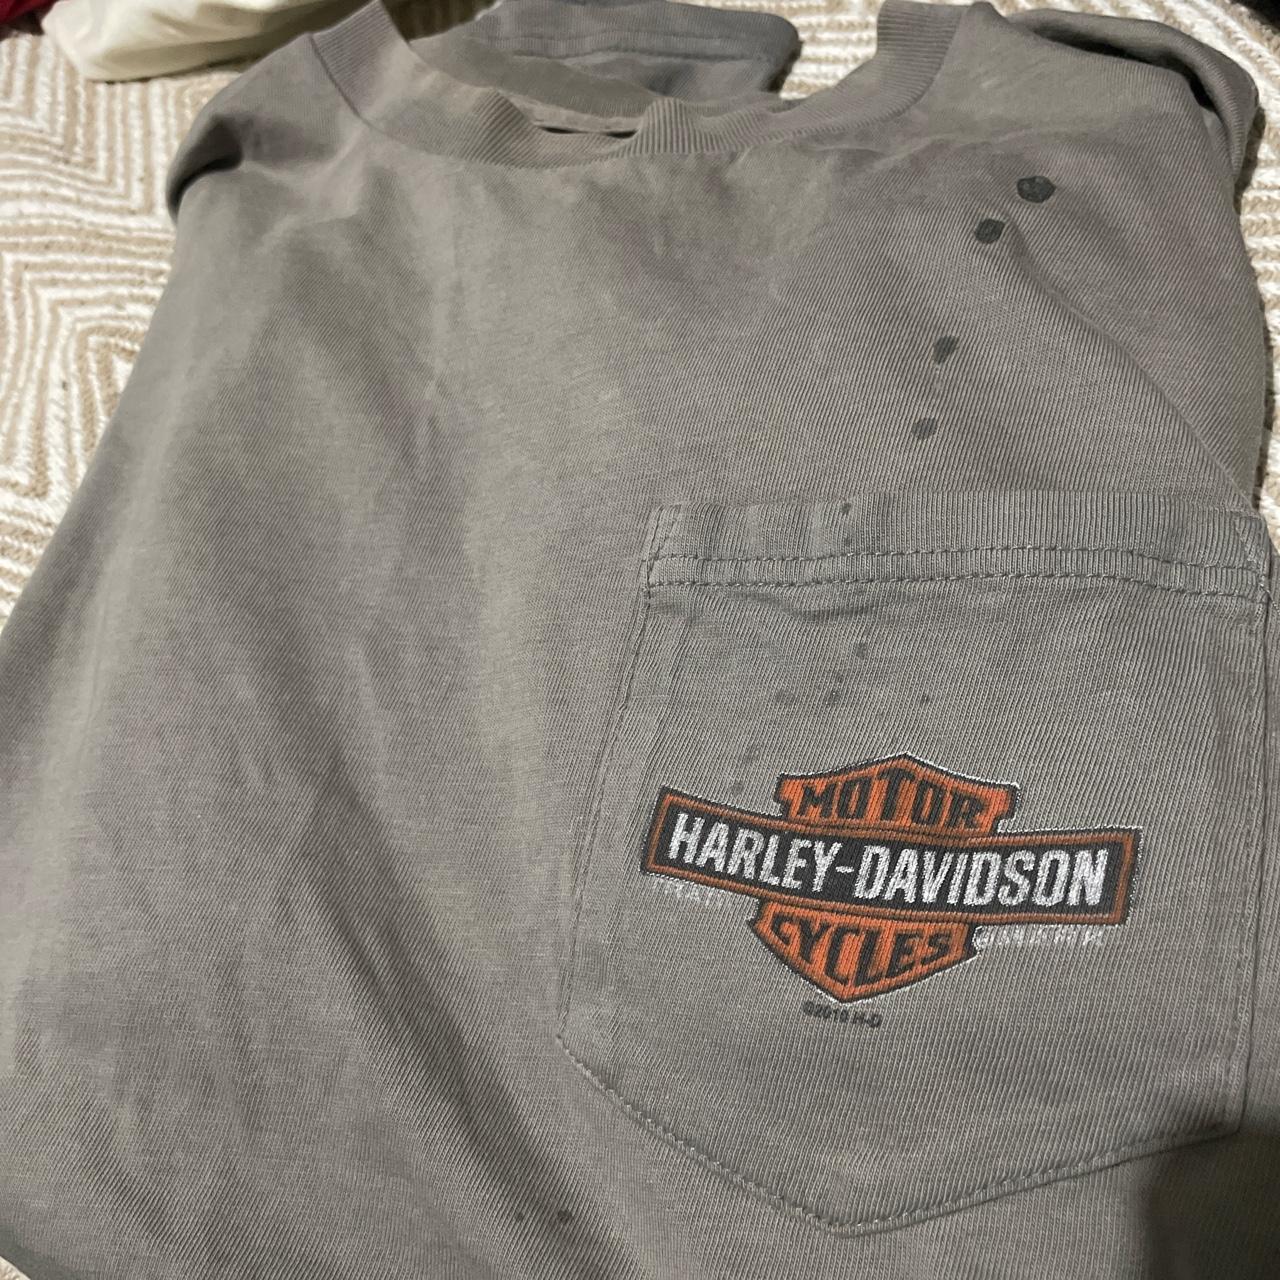 Harley Davidson vintage t shirt - Depop